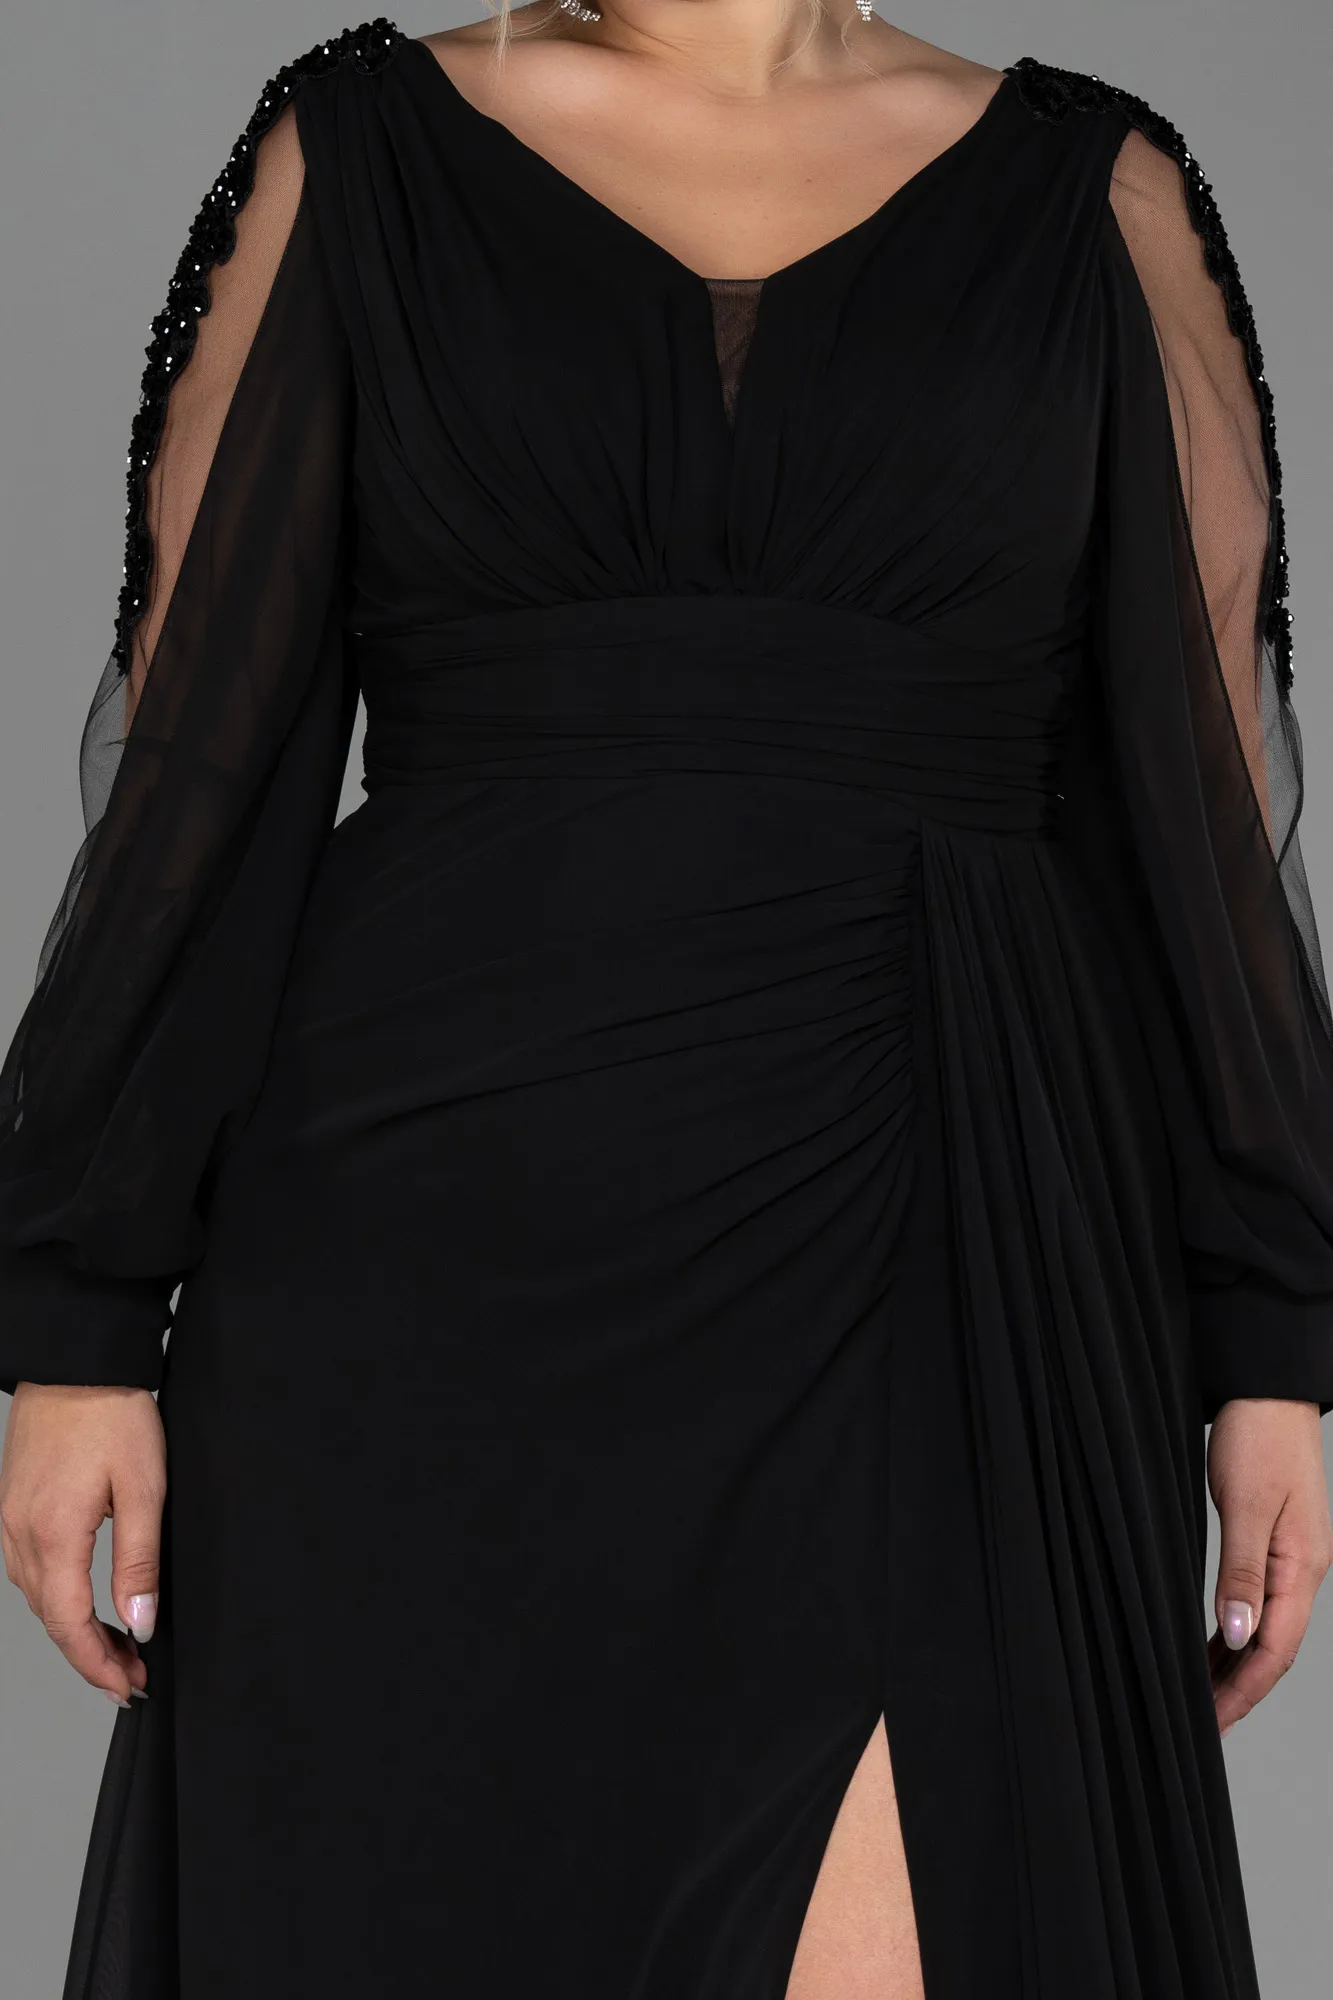 Black-Long Chiffon Plus Size Evening Dress ABU3221